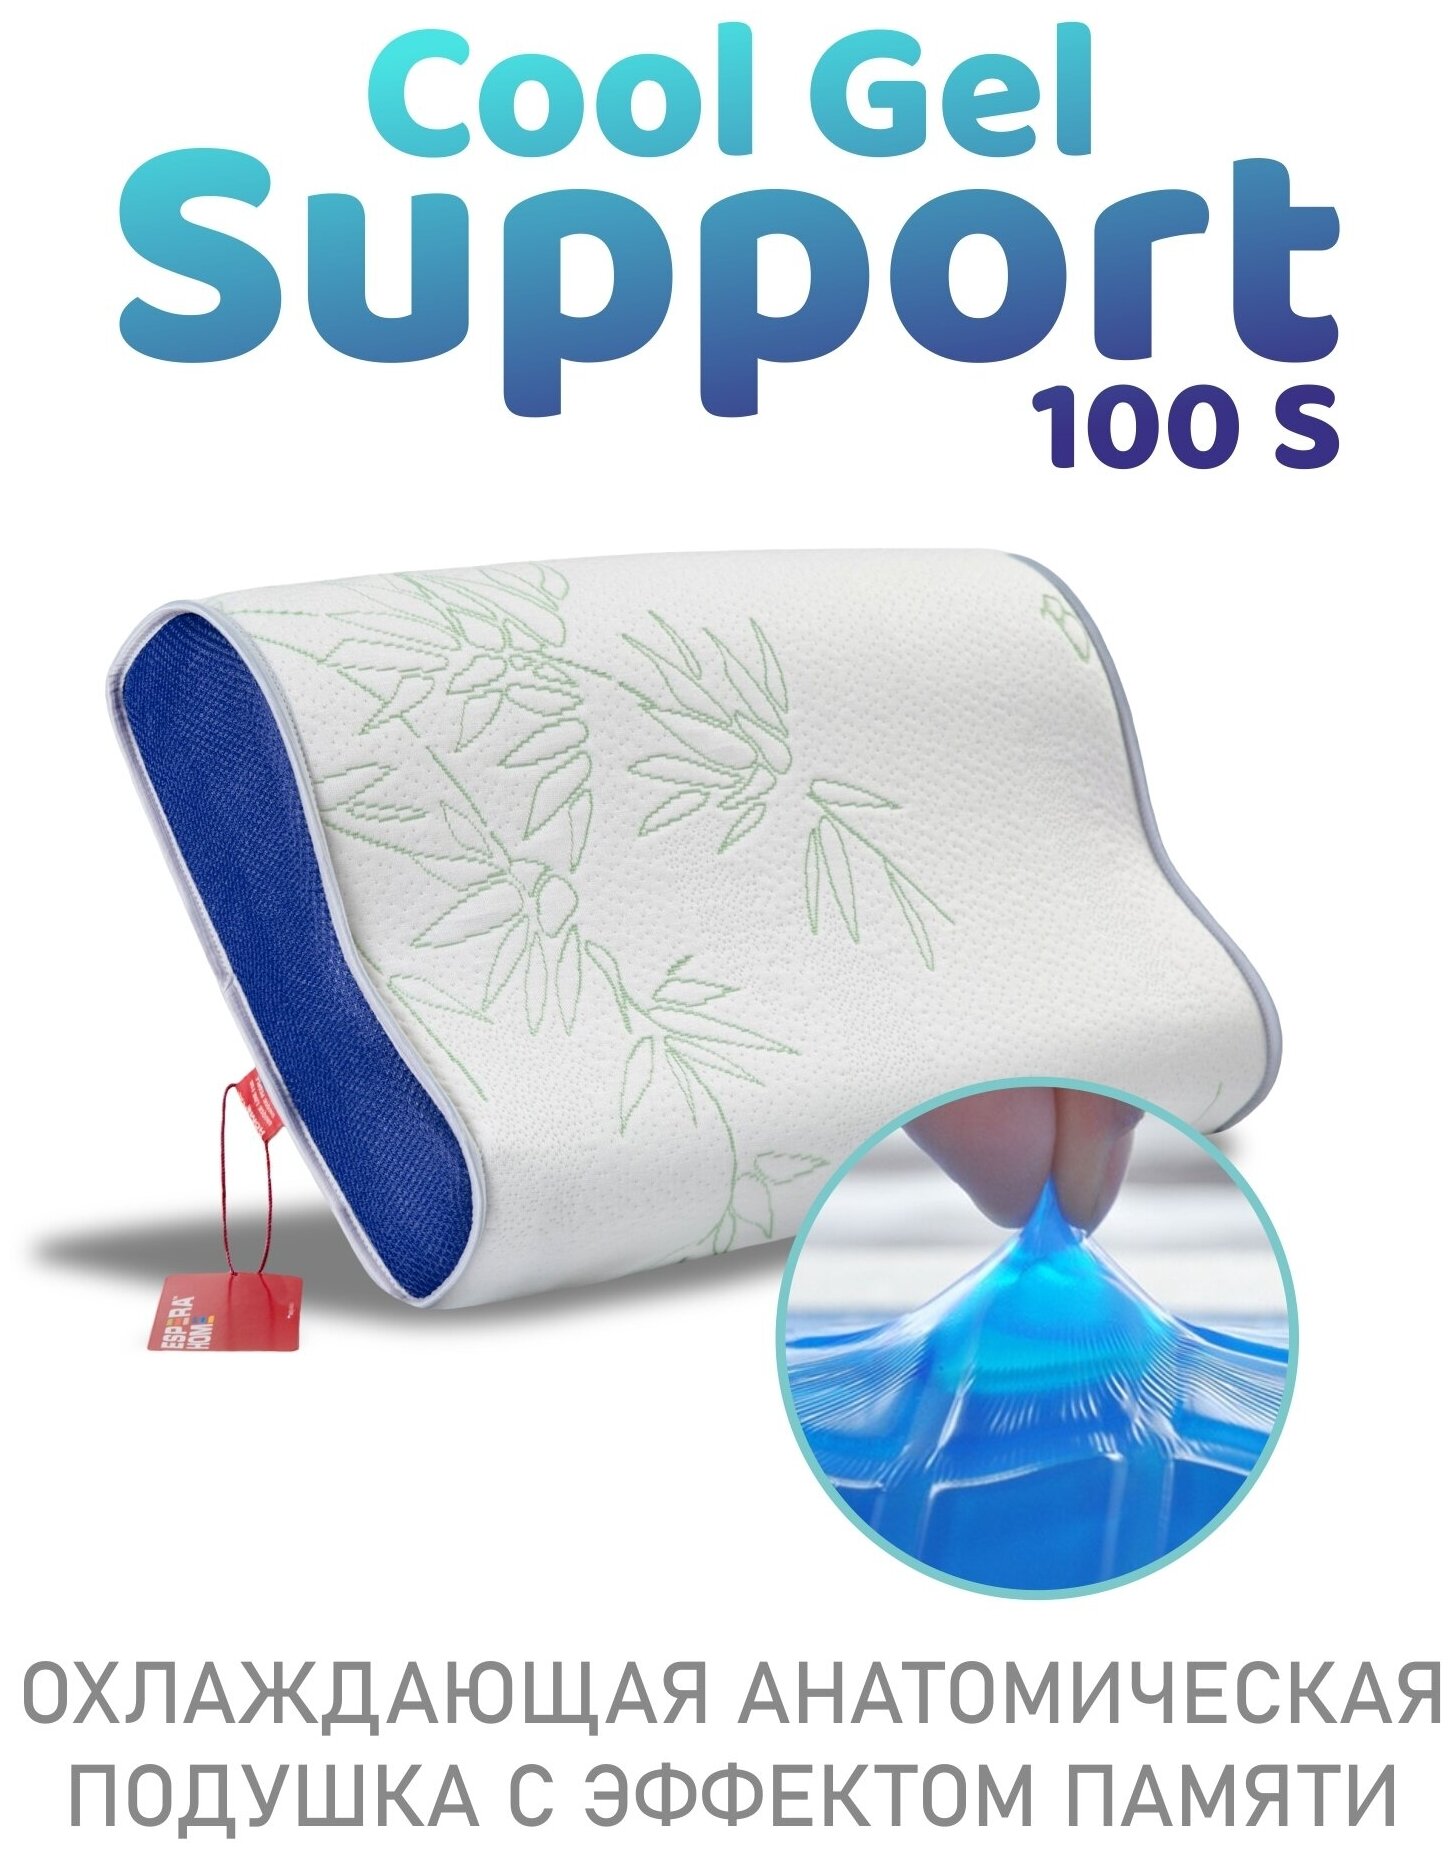 Подушка "Memory Foam Support 100S Cool Gel" в бамбуковой наволочке, 50х30 см